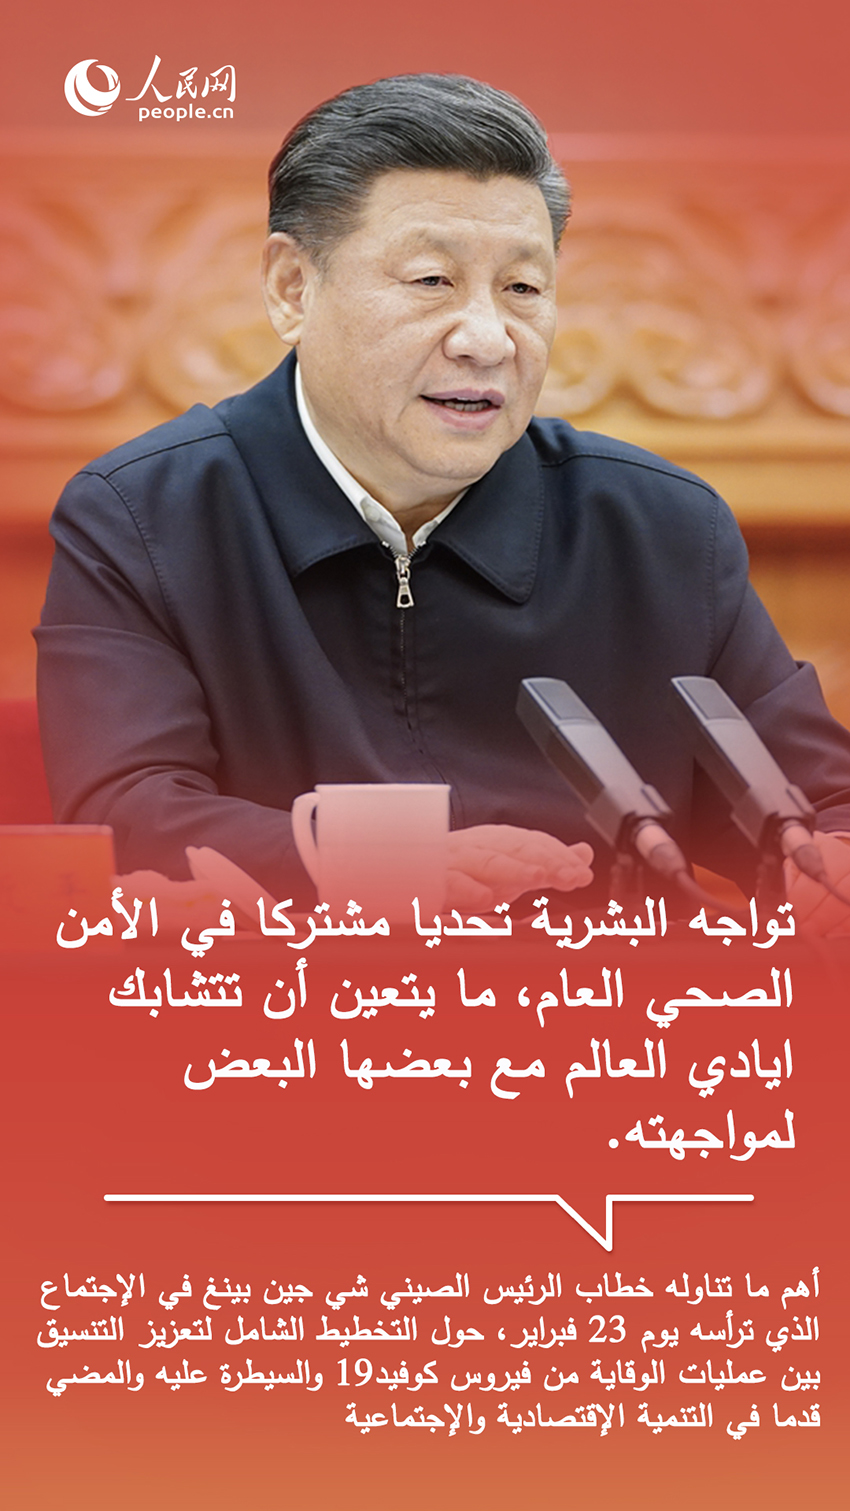 أقوال الرئيس الصيني شي جين بينغ في تعزيز التضامن الدولي لمحاربة كورونا الجديد